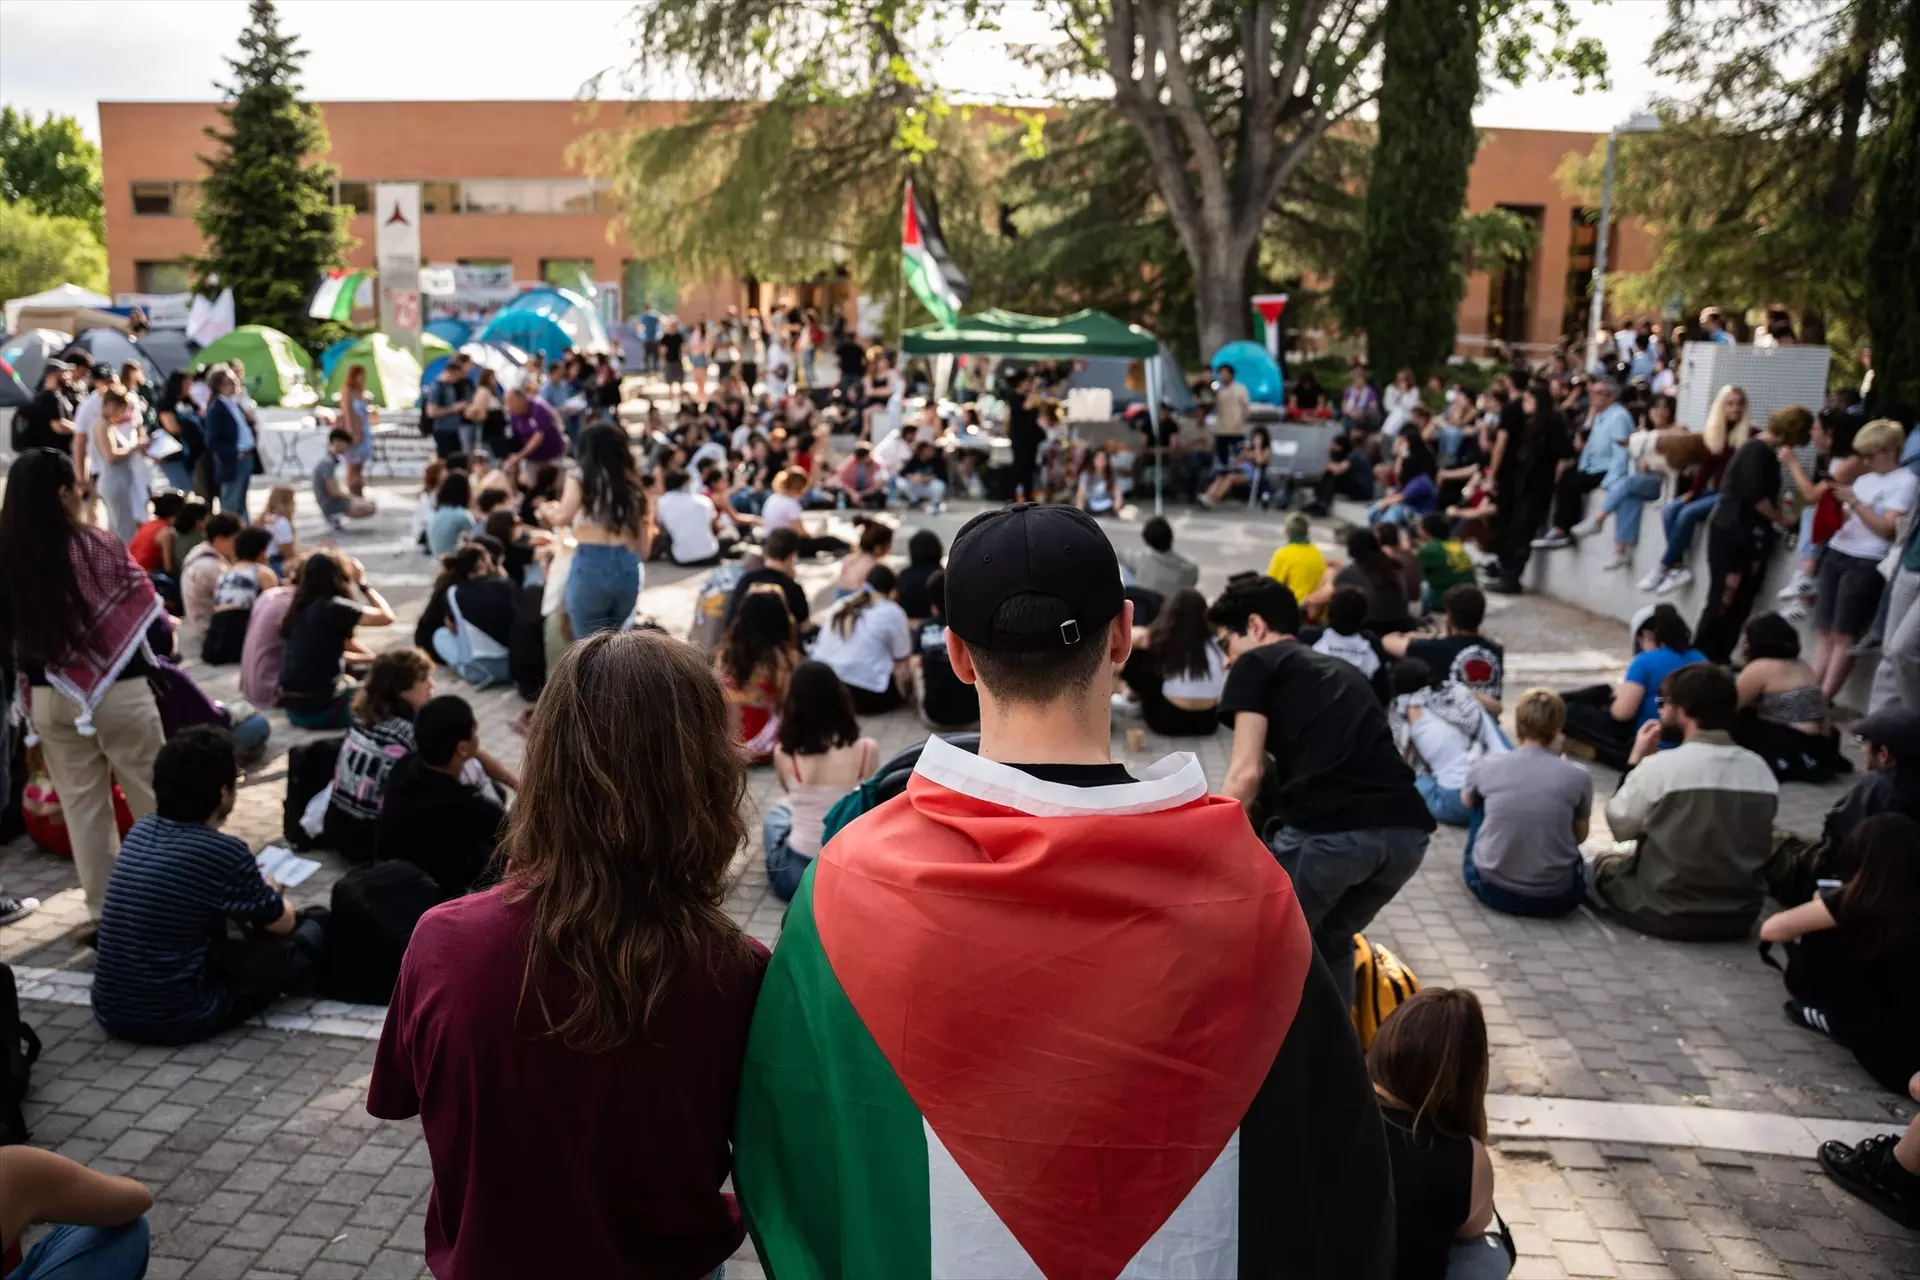 Las protestas por Palestina revelan la precariedad universitaria y sus lazos con empresas en Israel